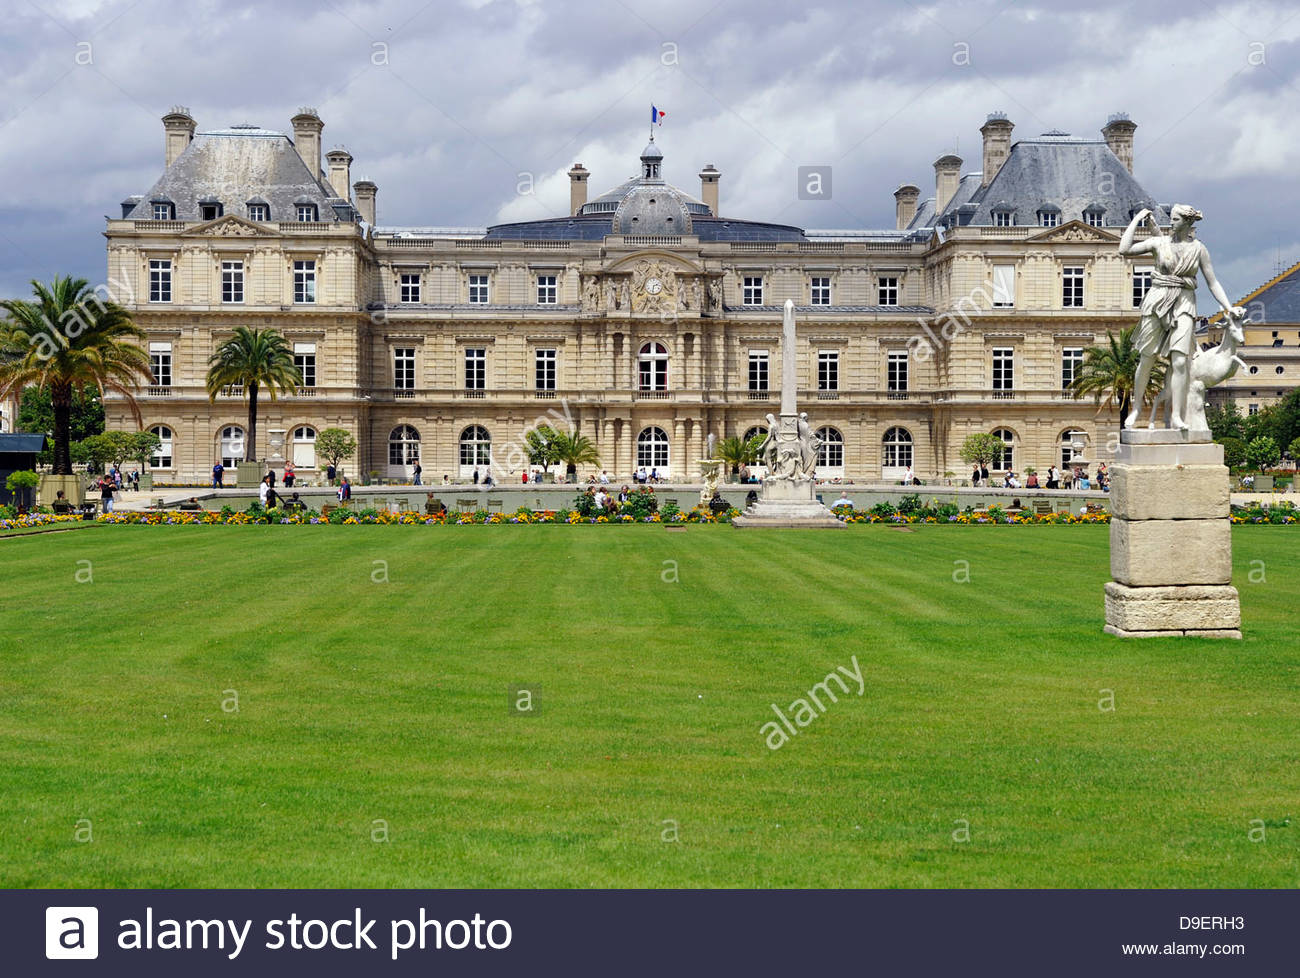 Le Jardin Du Luxembourg Paris Génial Palace Luxembourg Stock S & Palace Luxembourg